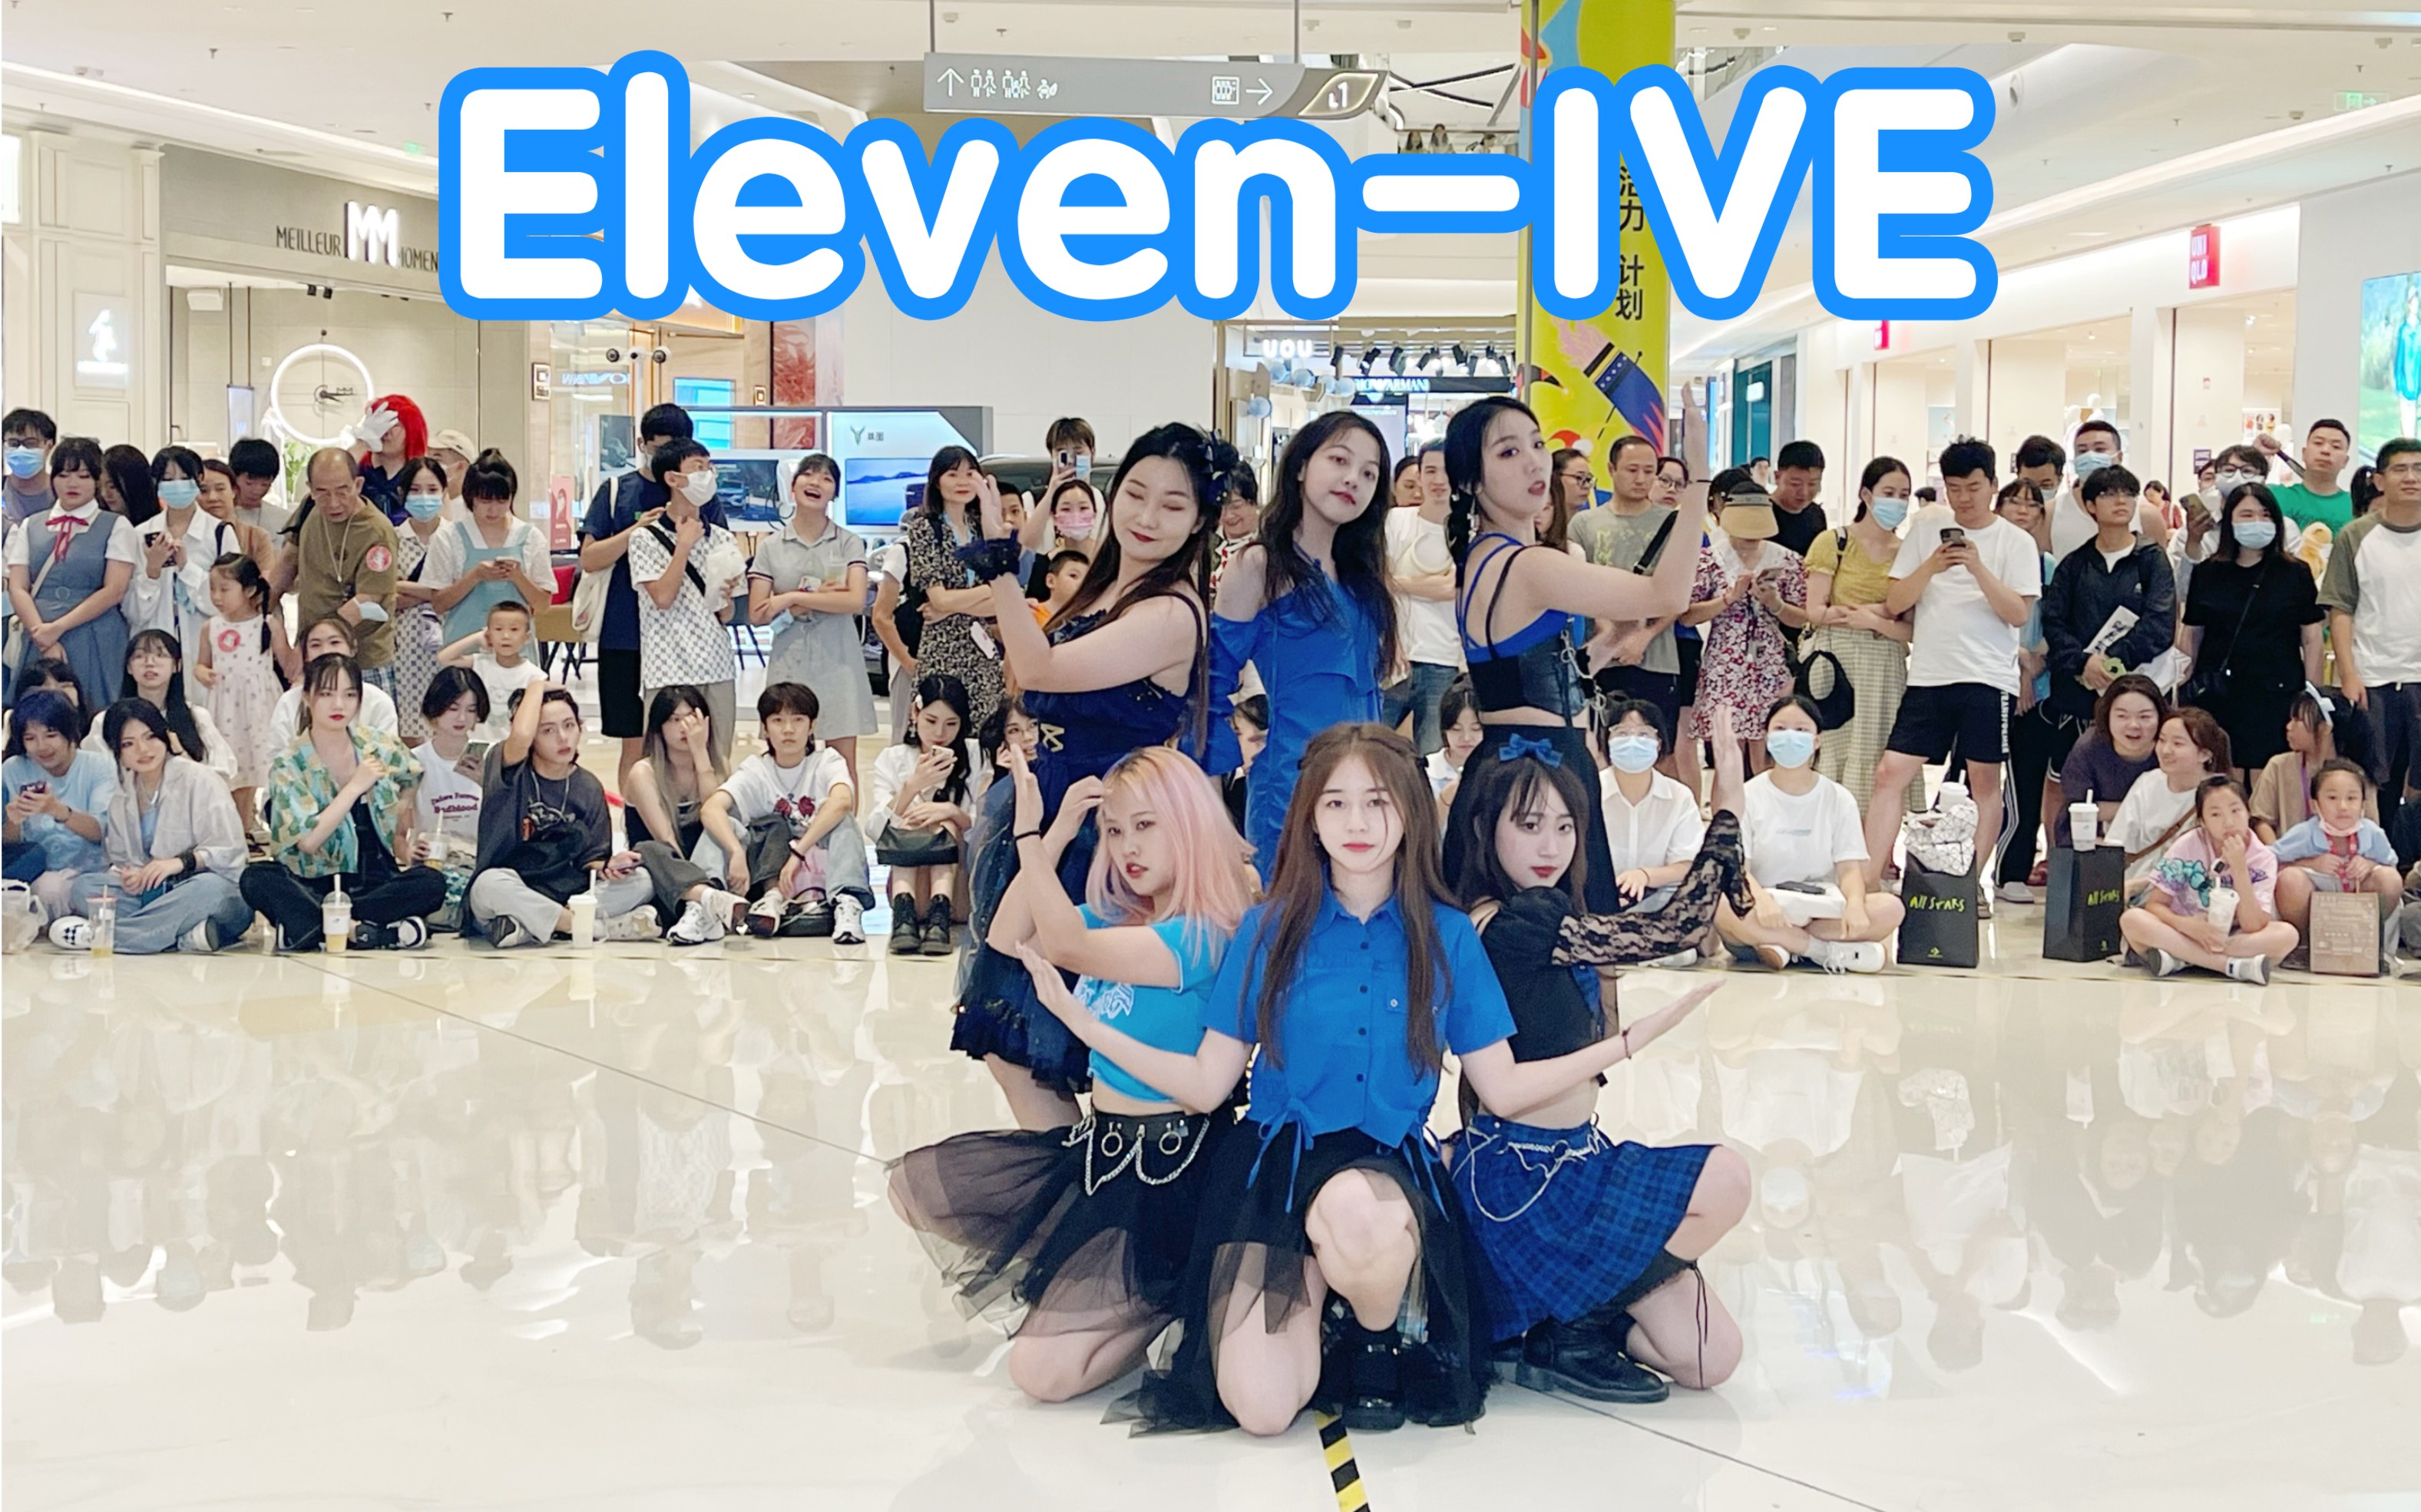 【演唱会一样的应援声】Eleven-IVE (Kpop in public成都龙湖滨江天街路演共享舞台)